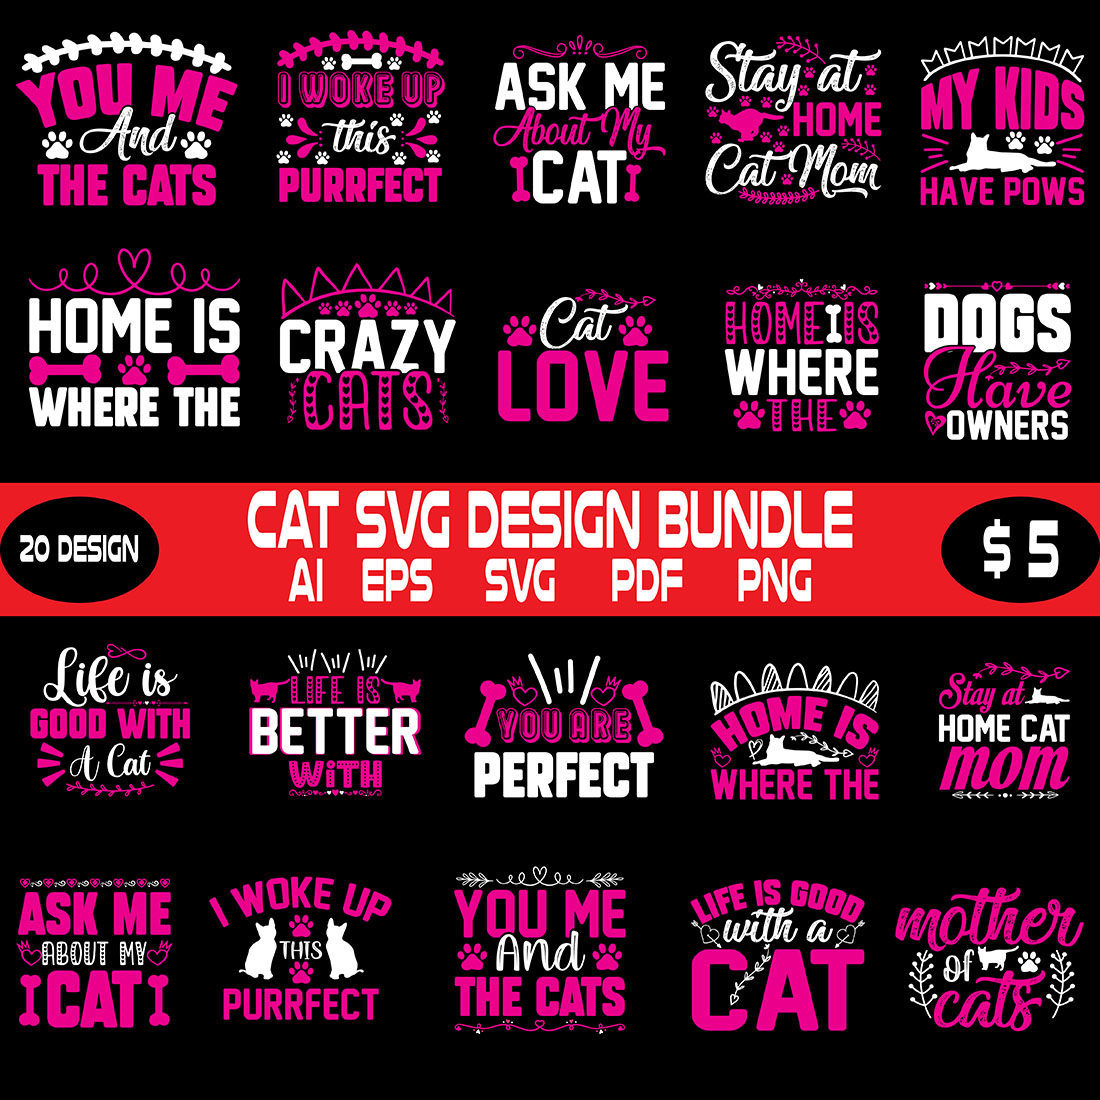 Cat Svg Design Bundle cover image.